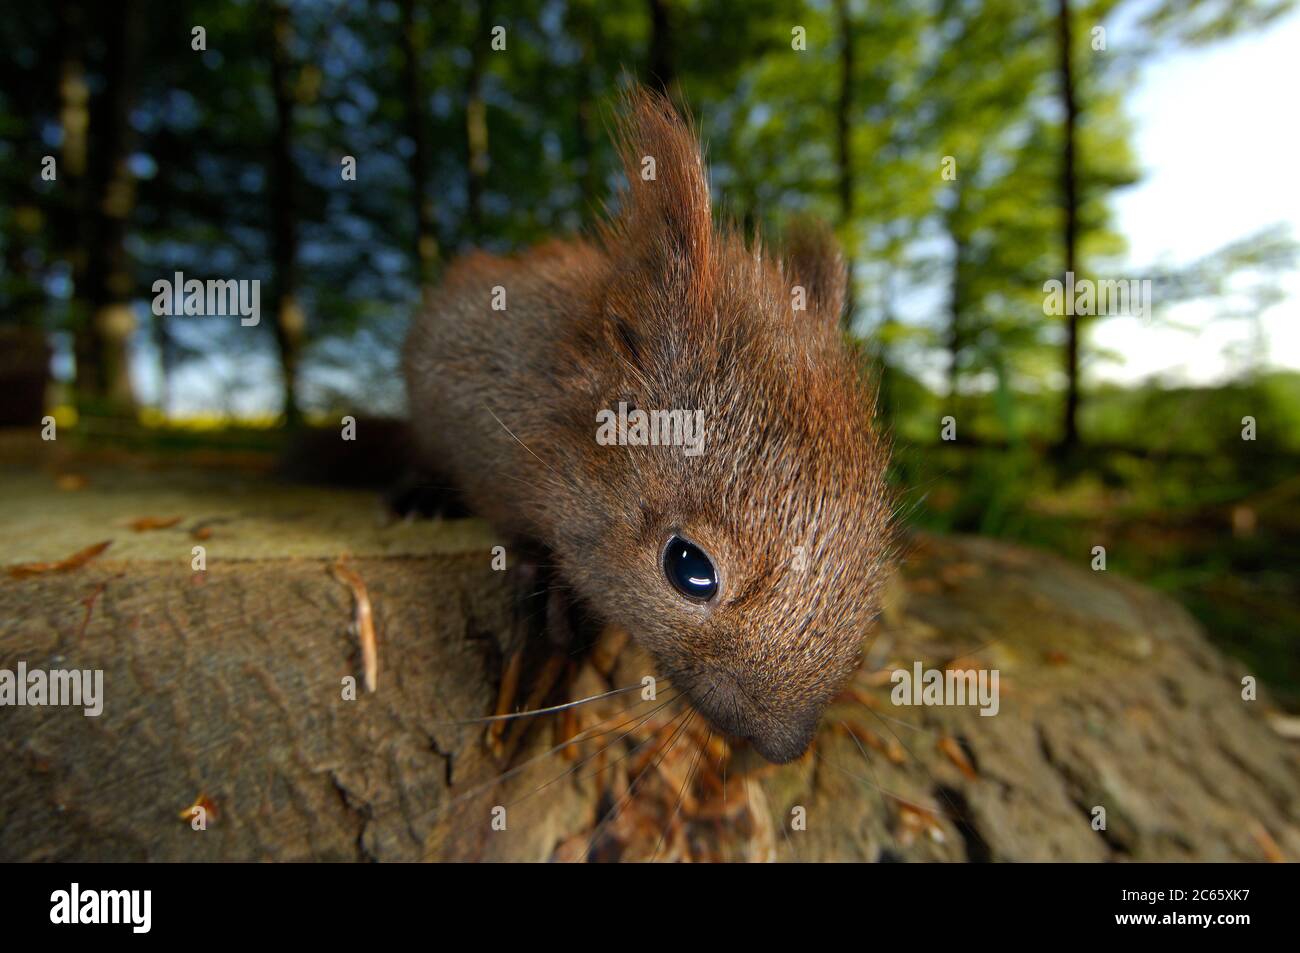 Subadult Eurasian red squirrel (Sciurus vulgaris) Stock Photo